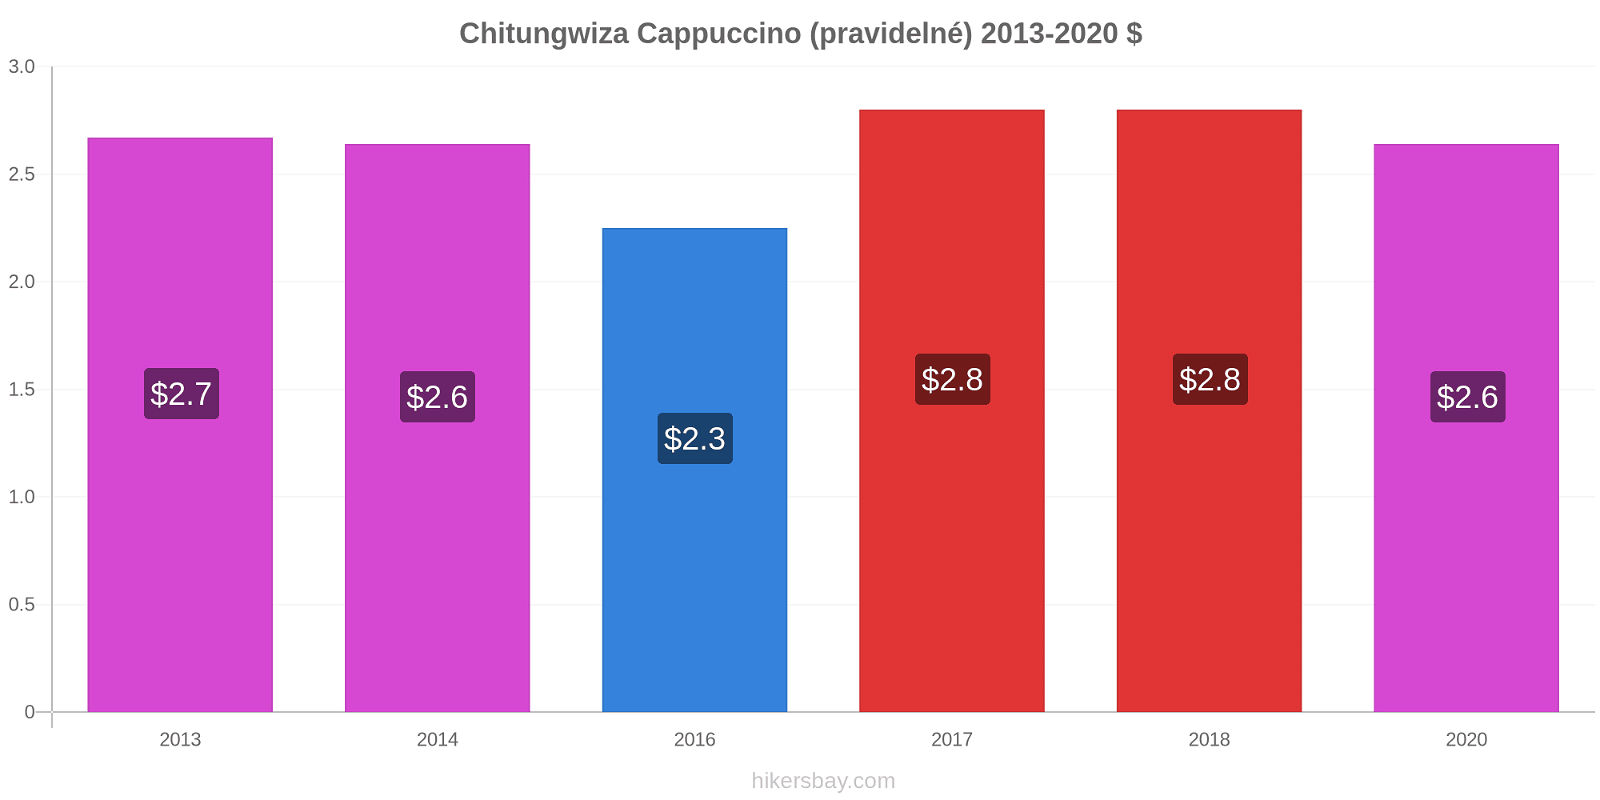 Chitungwiza změny cen Cappuccino (pravidelné) hikersbay.com